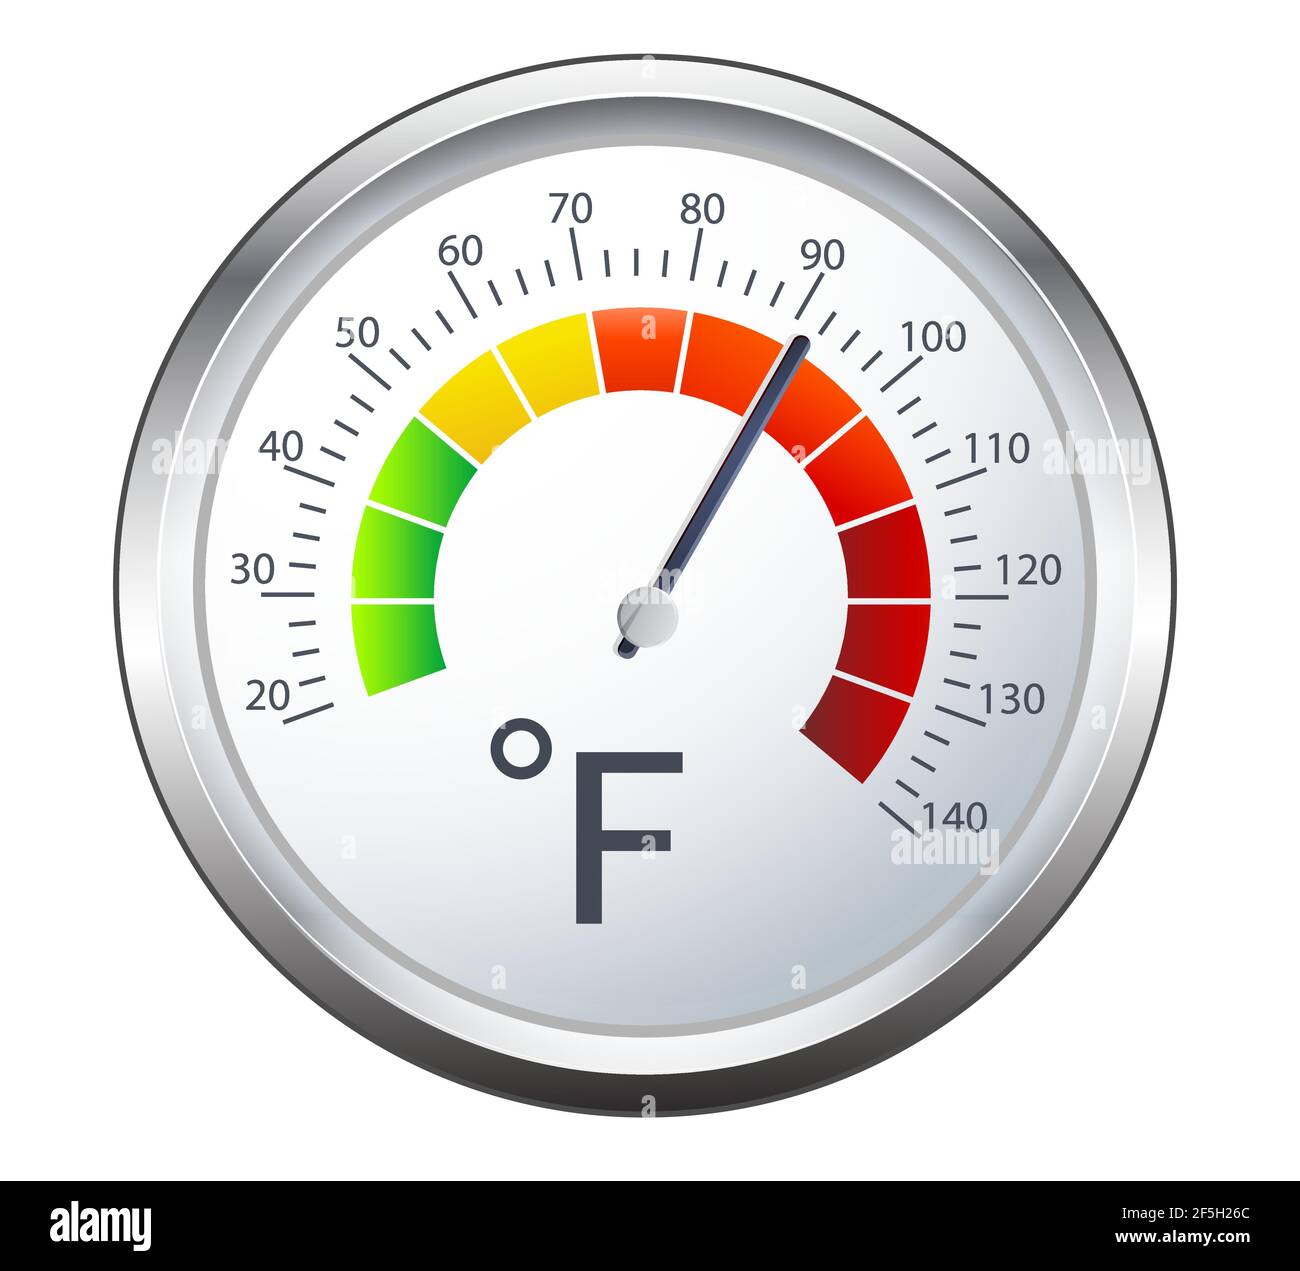 Indicateur de température des aliments - échelle en degrés Fahrenheit - icône en EPS 10 fichier Illustration de Vecteur